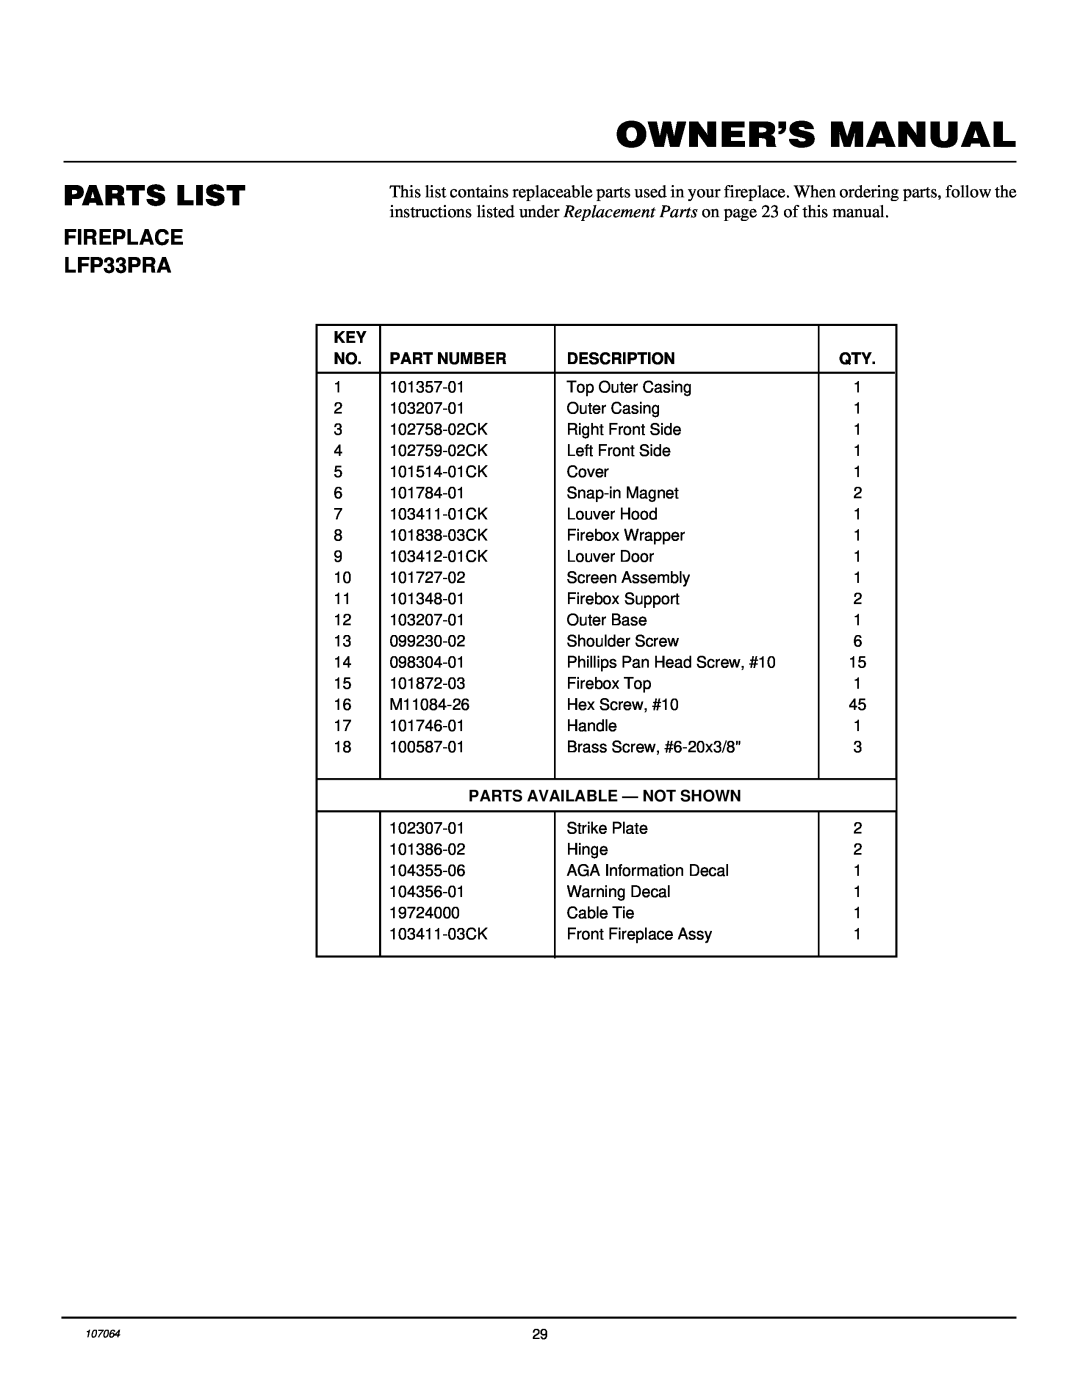 Desa installation manual FIREPLACE LFP33PRA, Parts List, Part Number, Description, Parts Available - Not Shown 